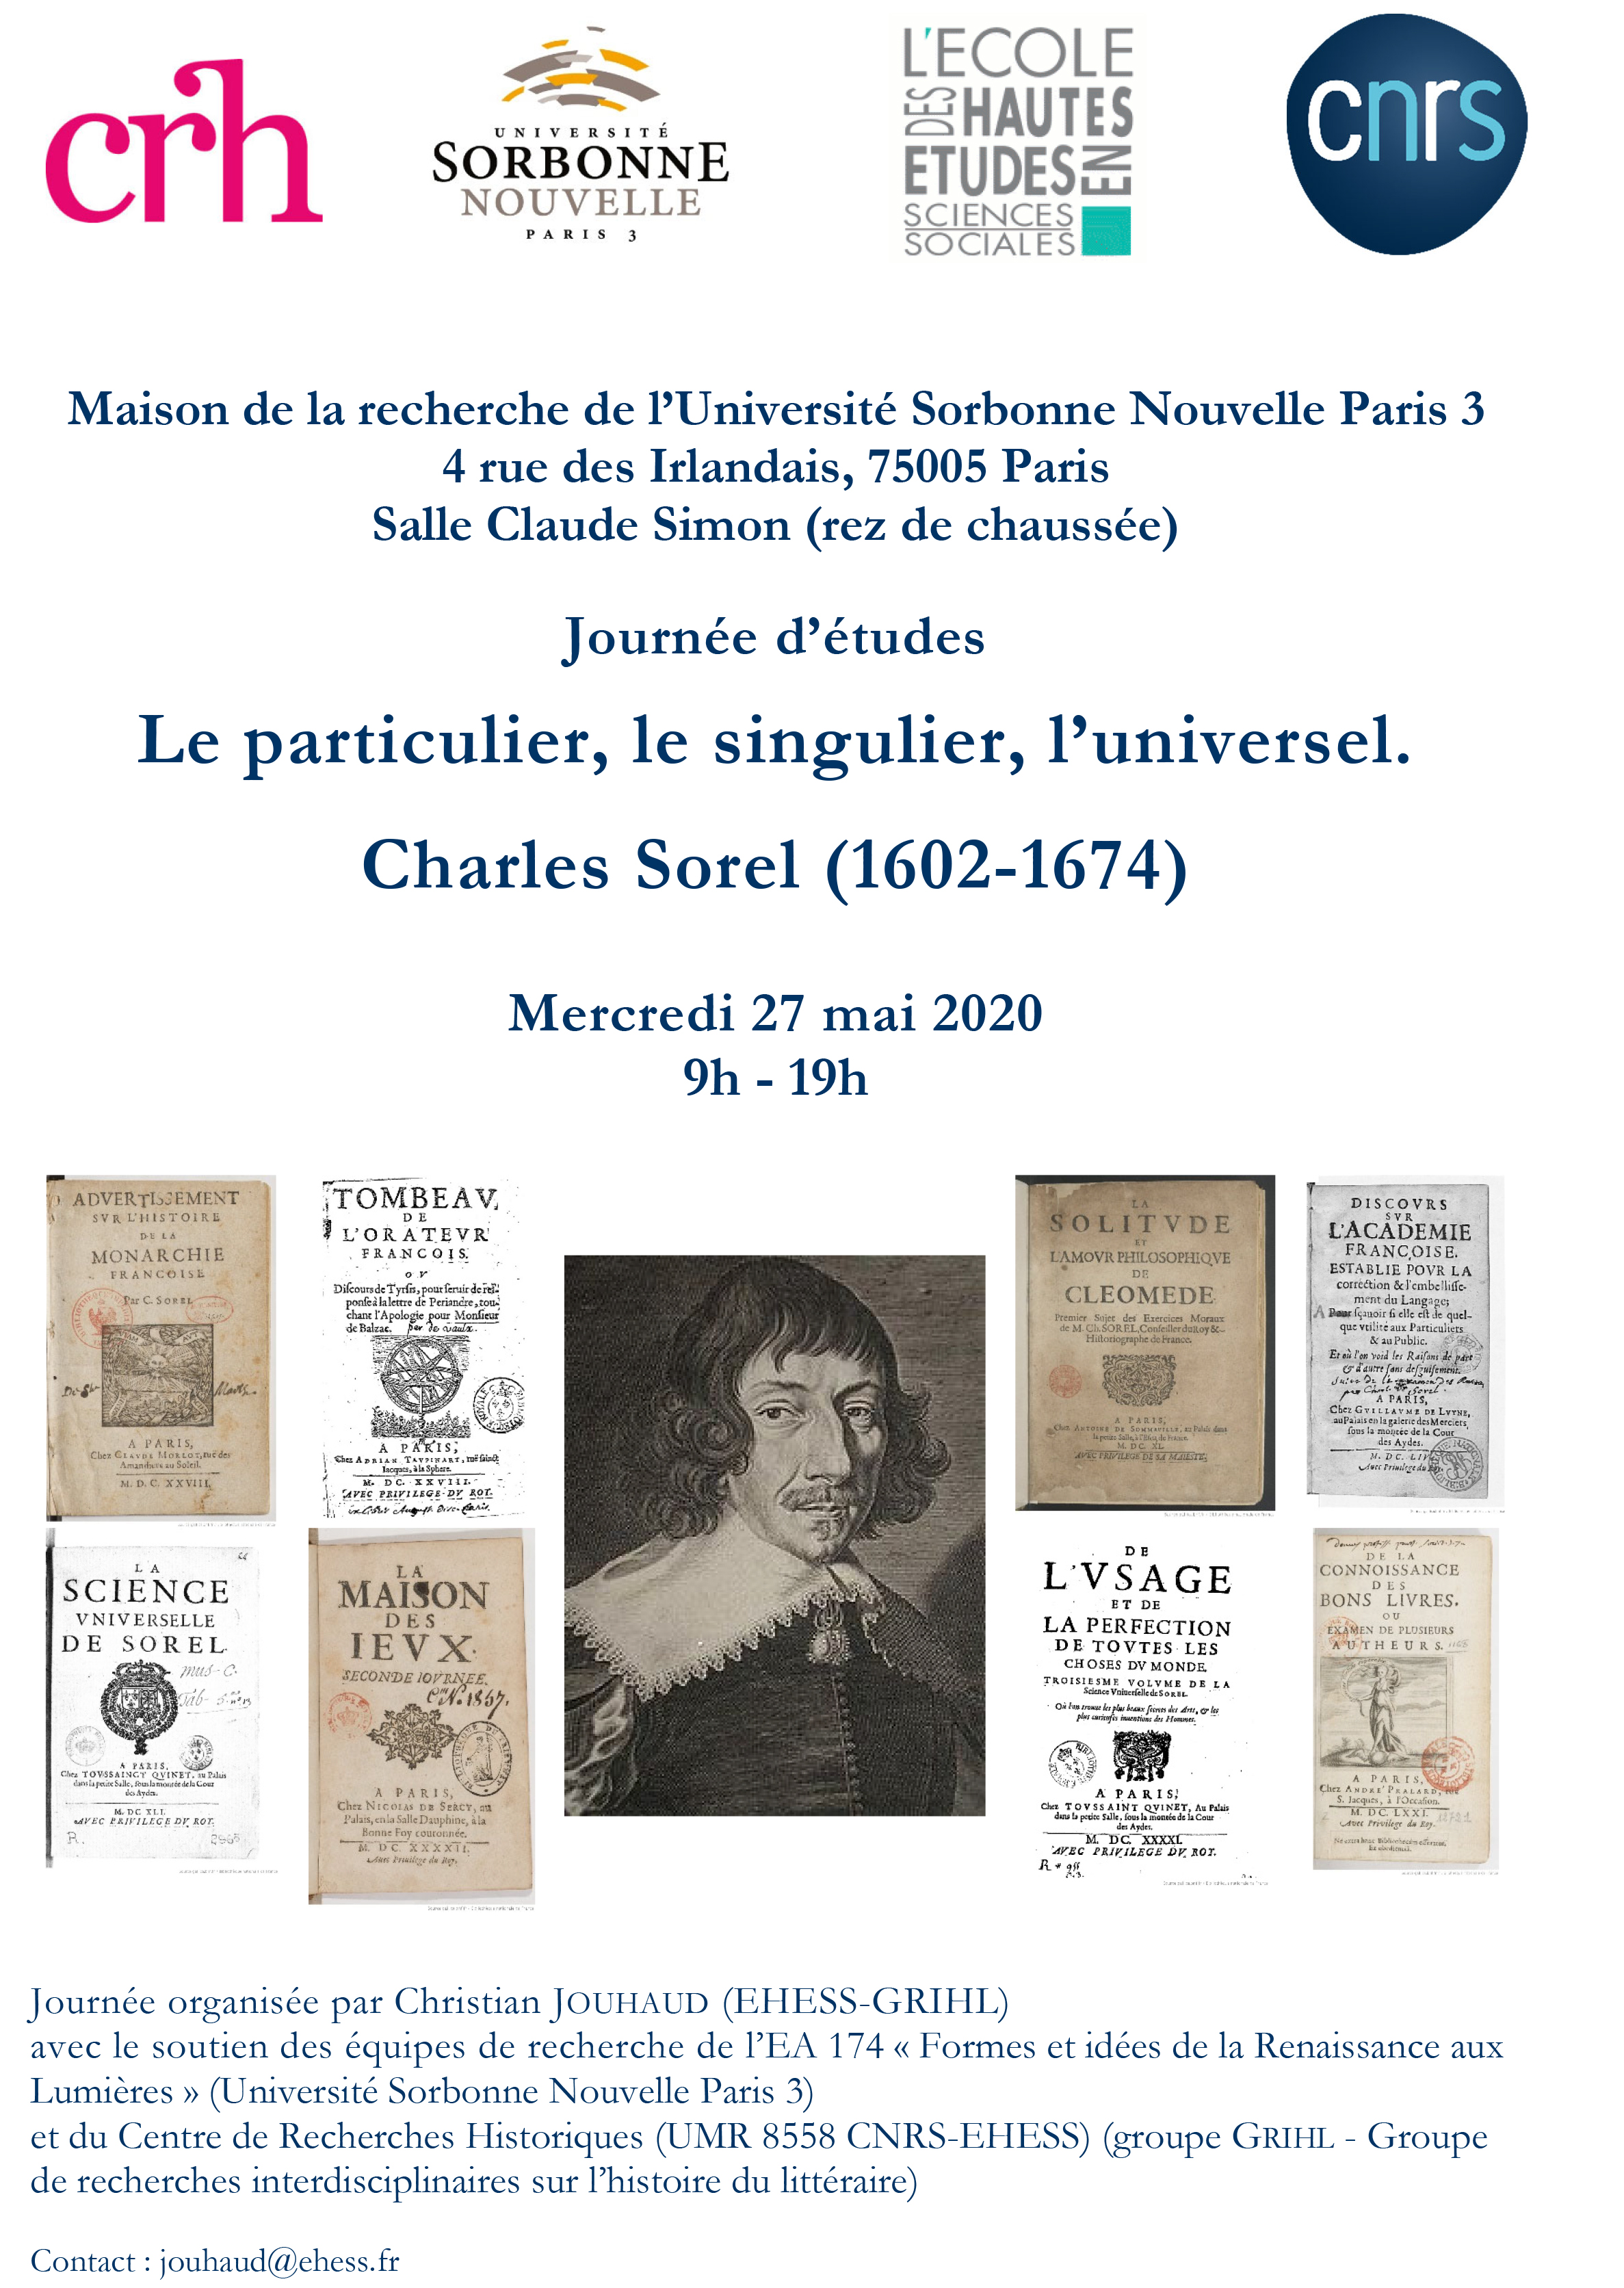 Le particulier, le singulier, l’universel. Charles Sorel (1602-1674)